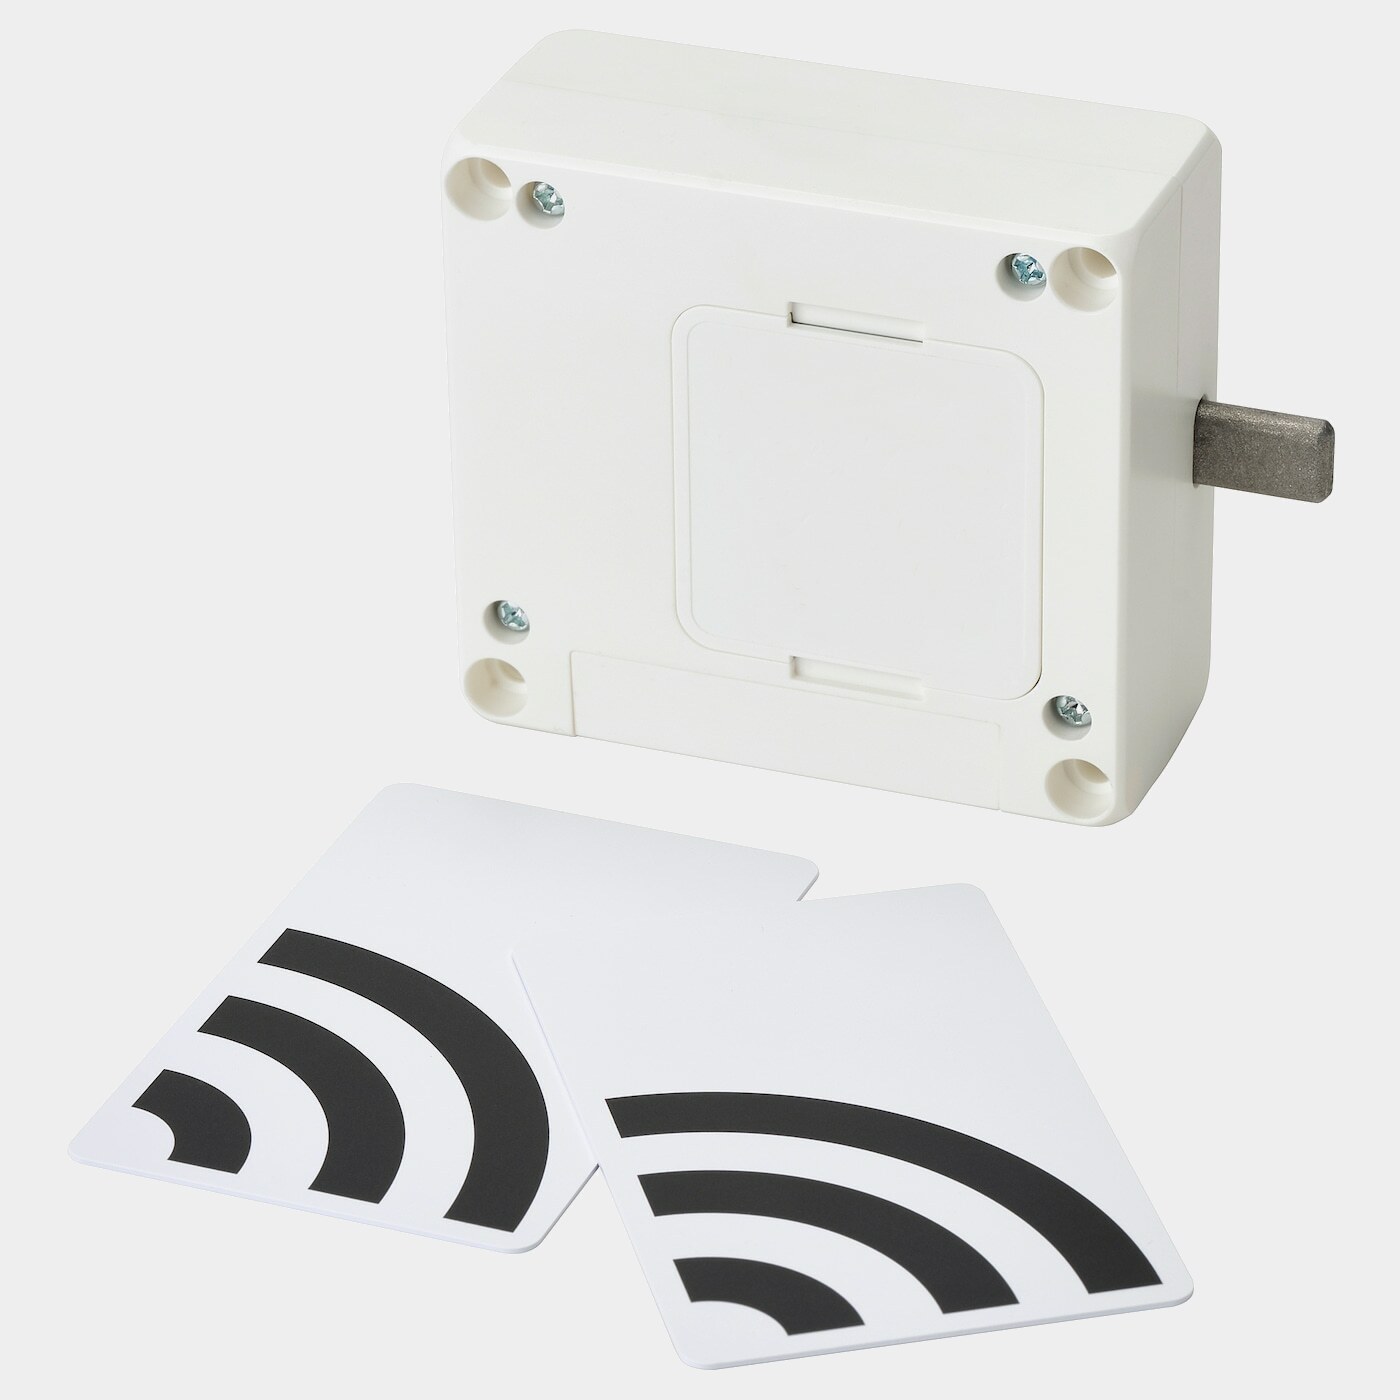 ROTHULT NFC-Schloss  - Kabel & Zubehör - Heimelektronik Ideen für dein Zuhause von Home Trends. Heimelektronik Trends von Social Media Influencer für dein Skandi Zuhause.